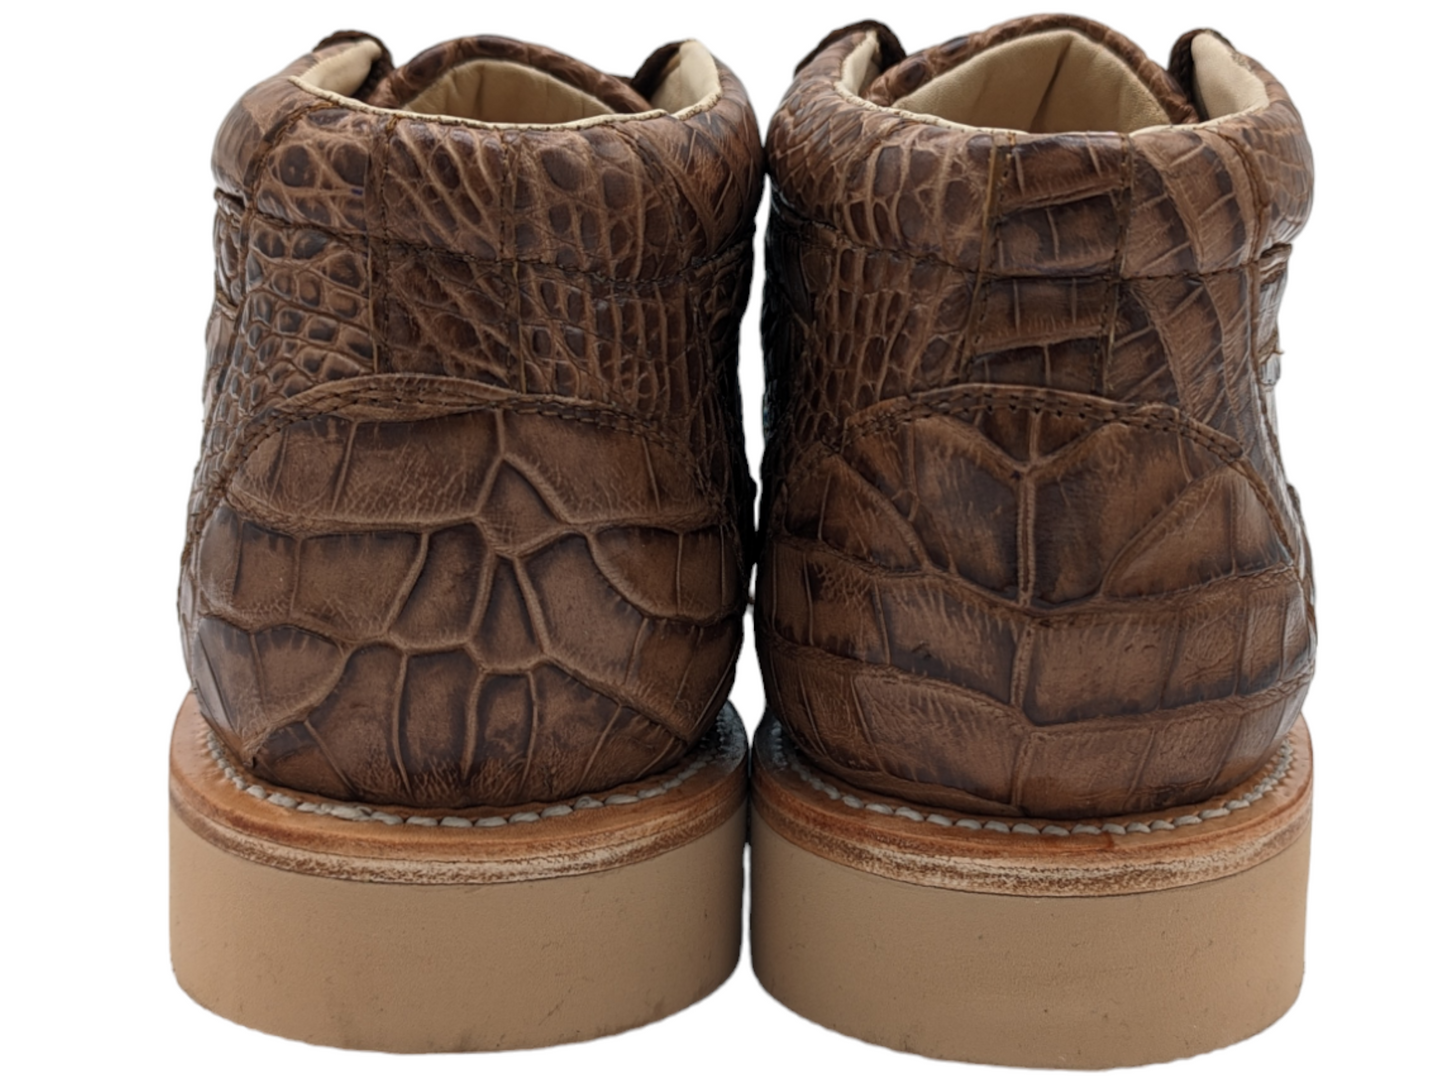 Men's Chestnut Alligator Sneaker Shoes